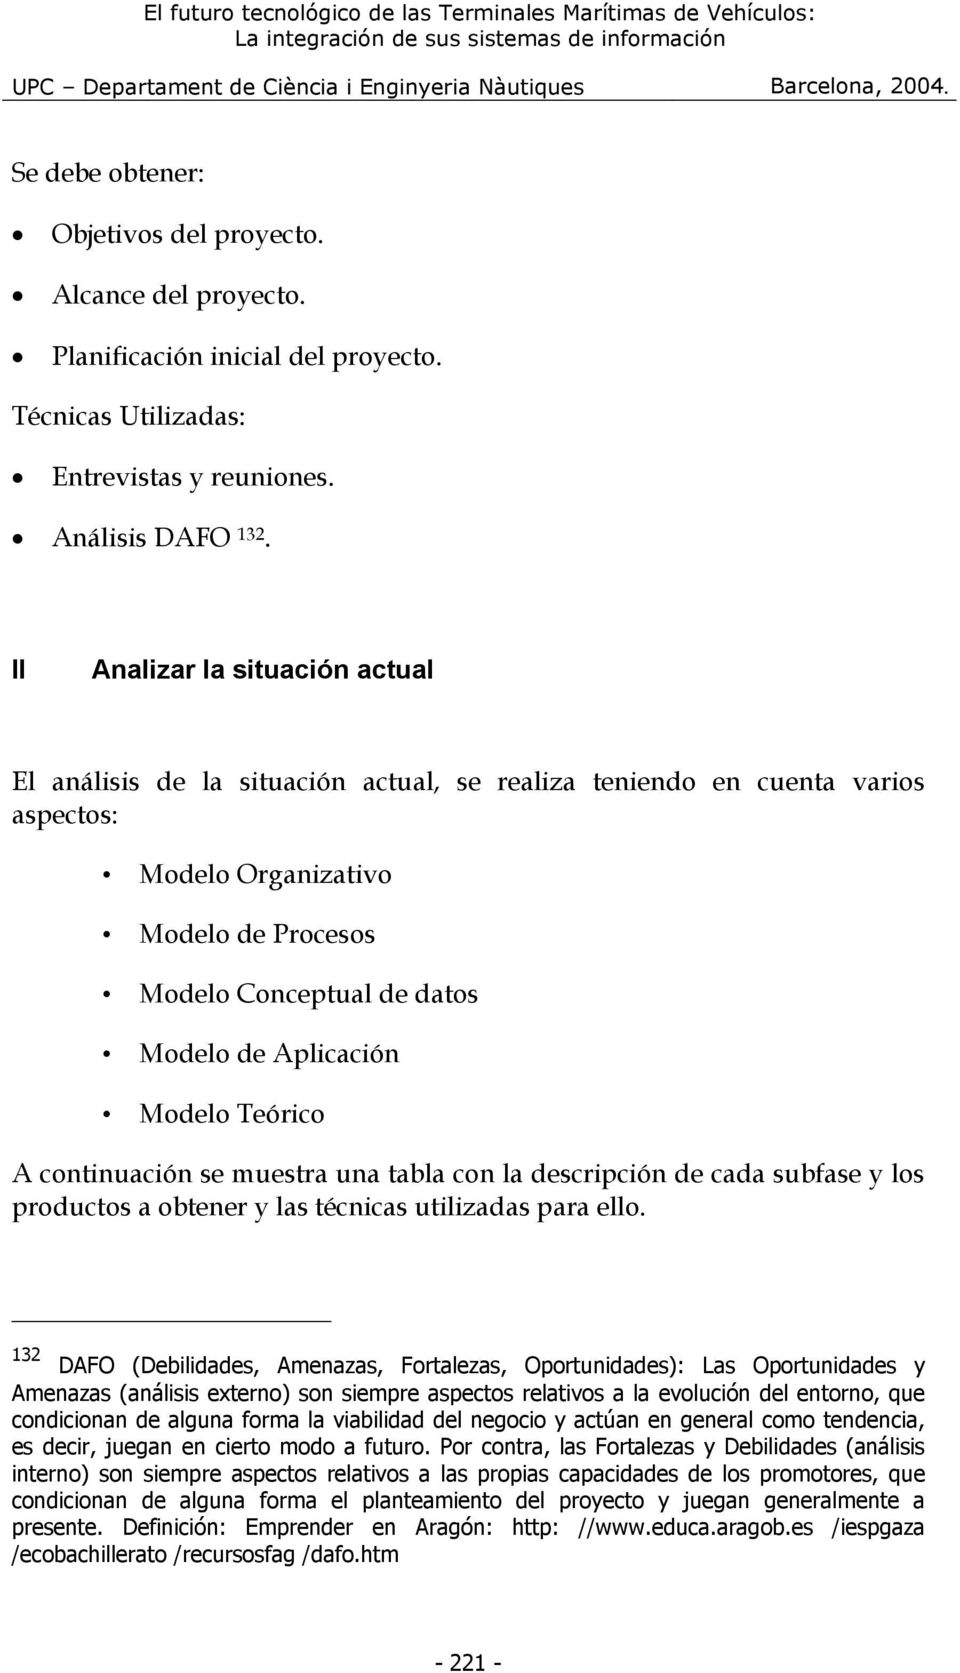 Aplicación Modelo Teórico A continuación se muestra una tabla con la descripción de cada subfase y los productos a obtener y las técnicas utilizadas para ello.